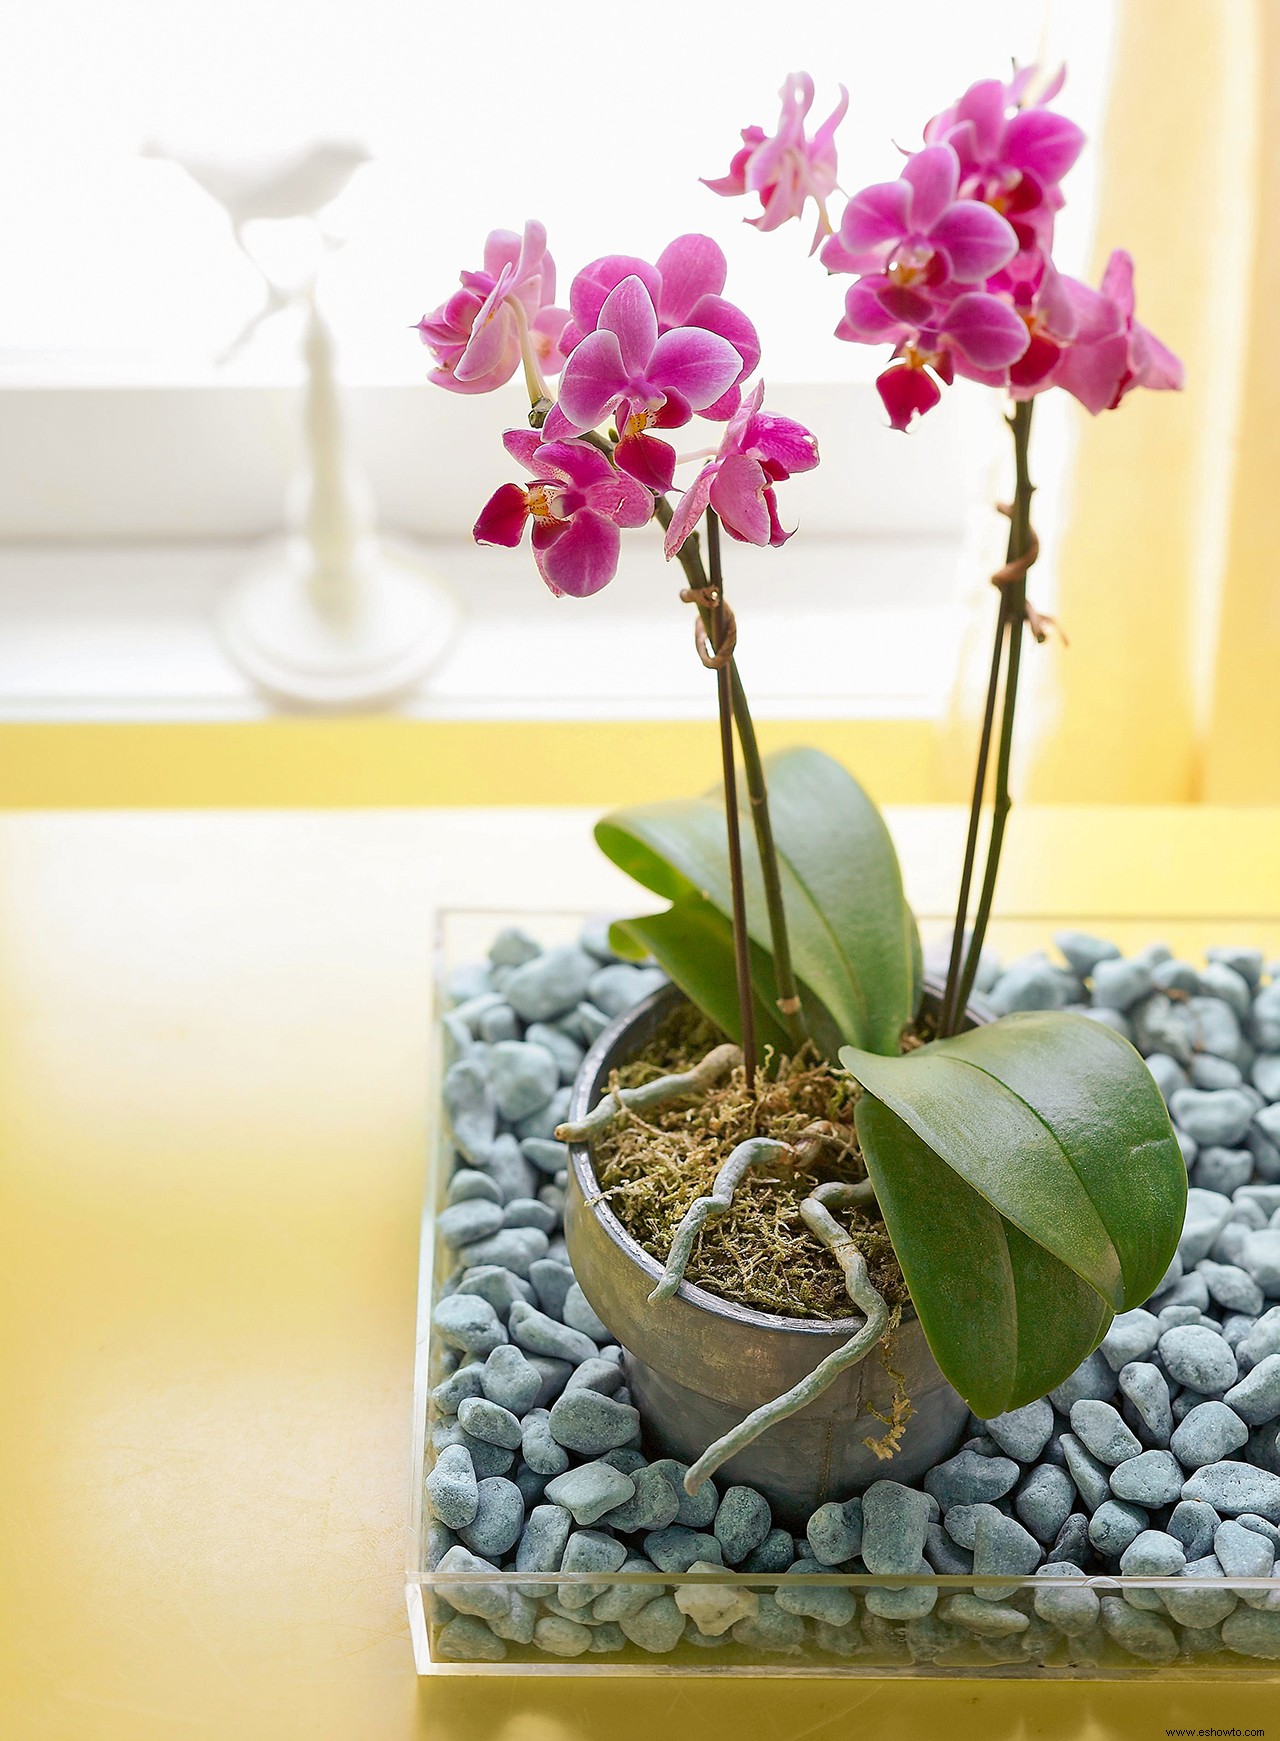 Cómo cultivar las orquídeas más bonitas (y saludables) en su jardín interior 